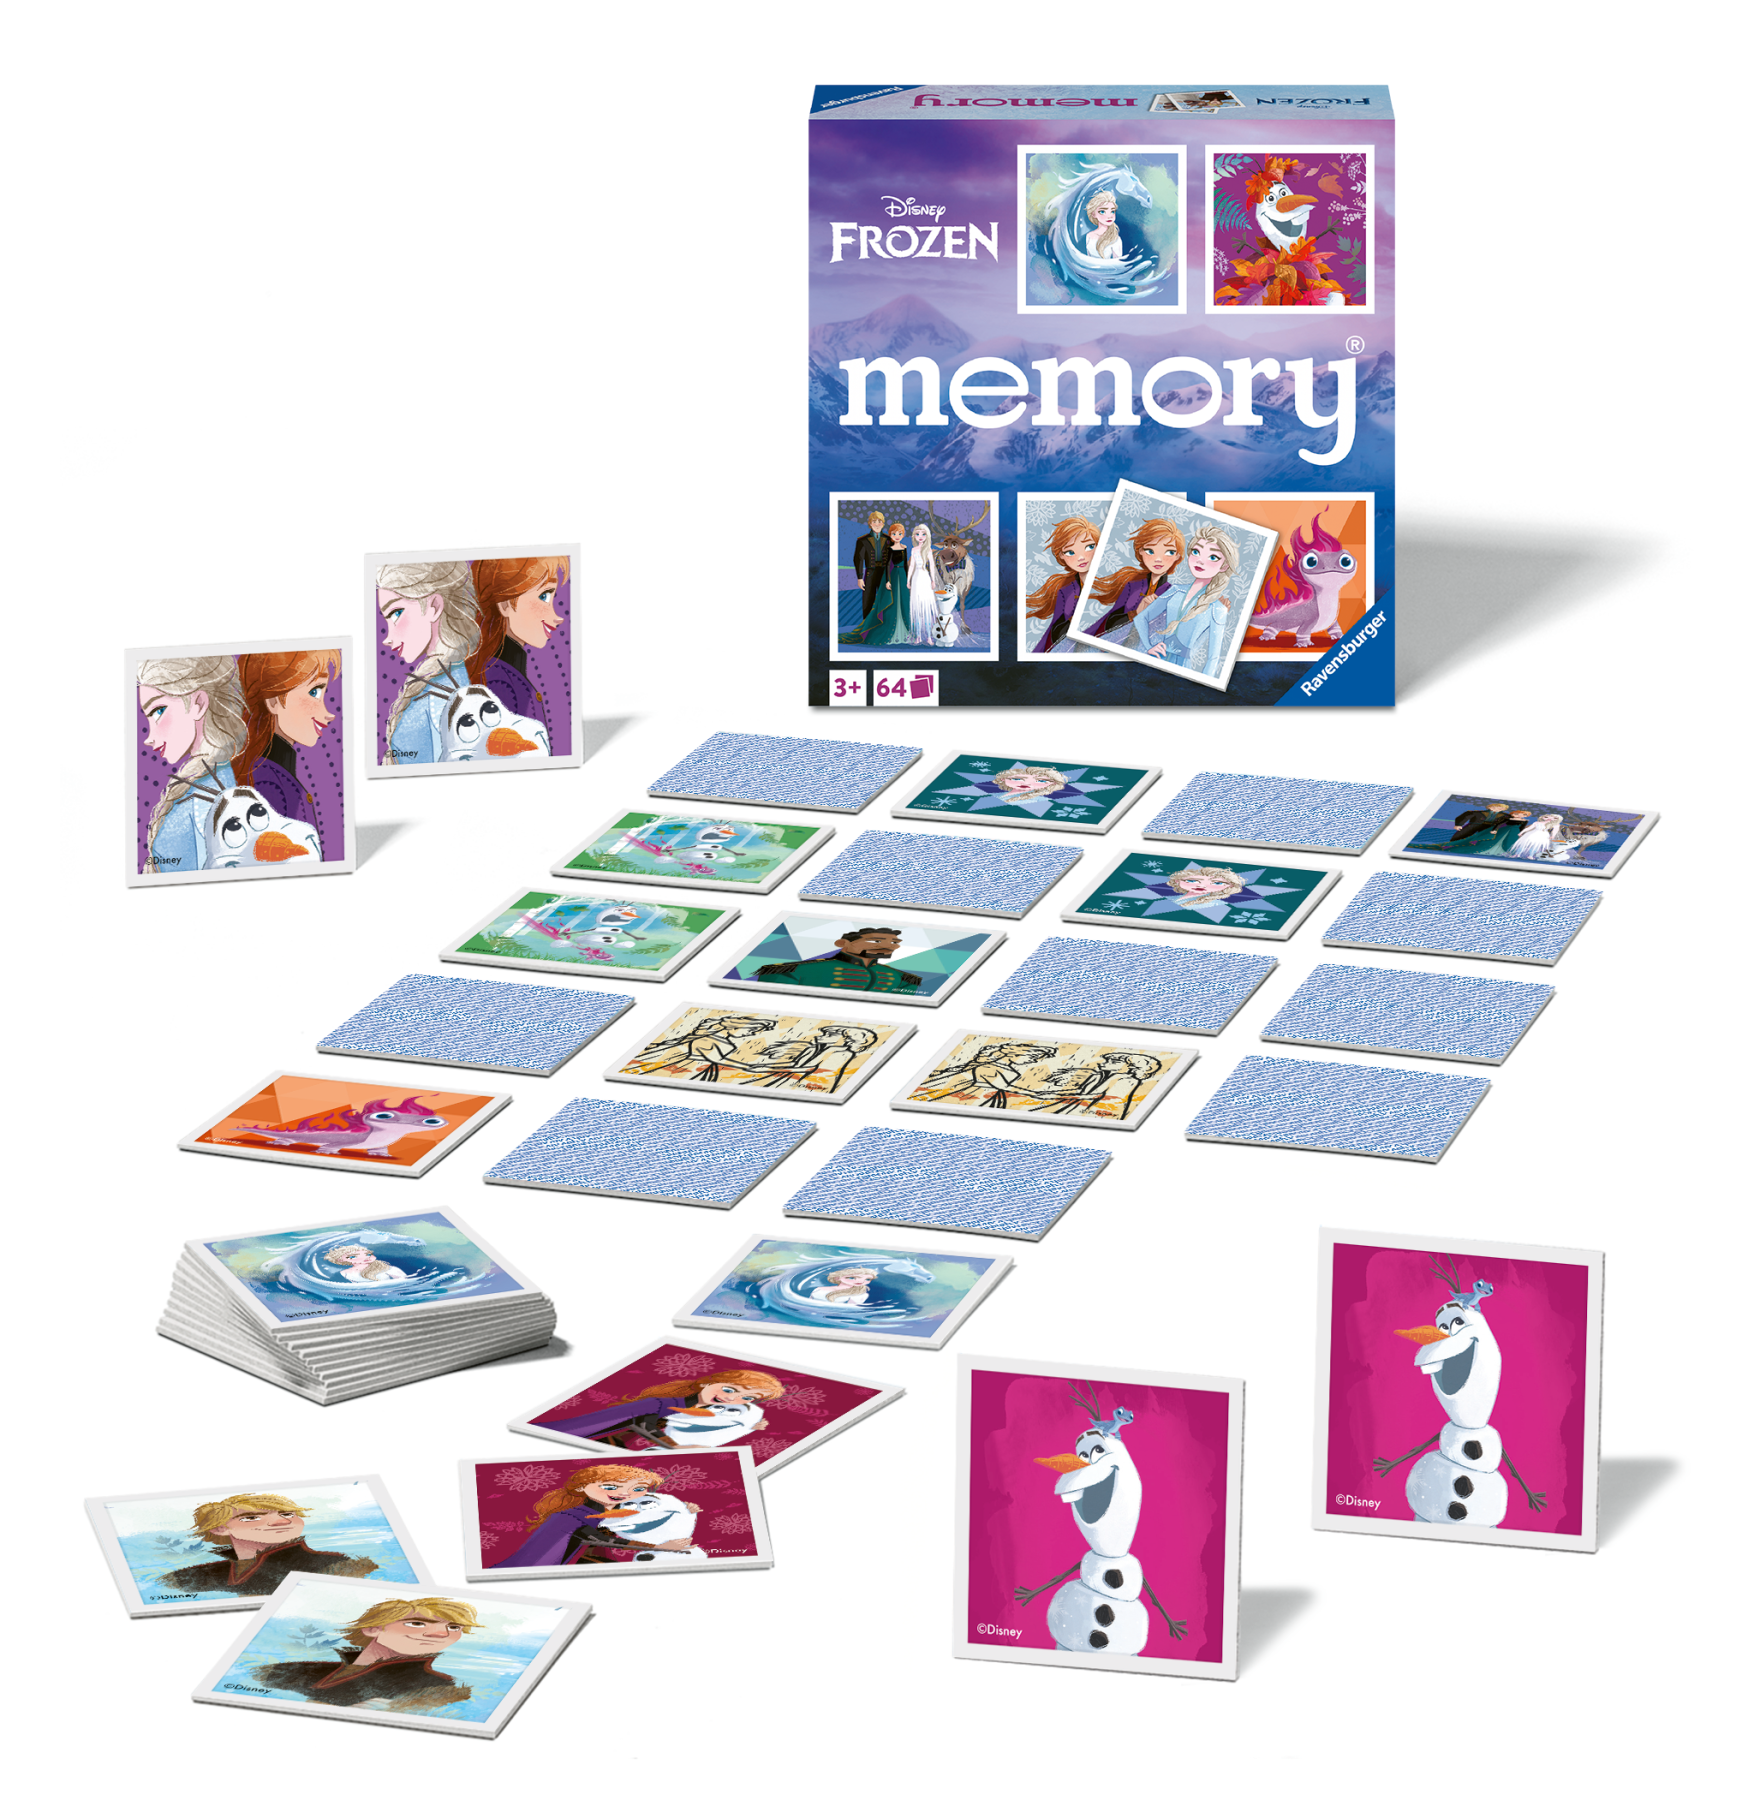 Ravensburger - memory® versione frozen, 64 tessere, gioco da tavolo, 3+ anni - DISNEY PRINCESS, RAVENSBURGER, Frozen